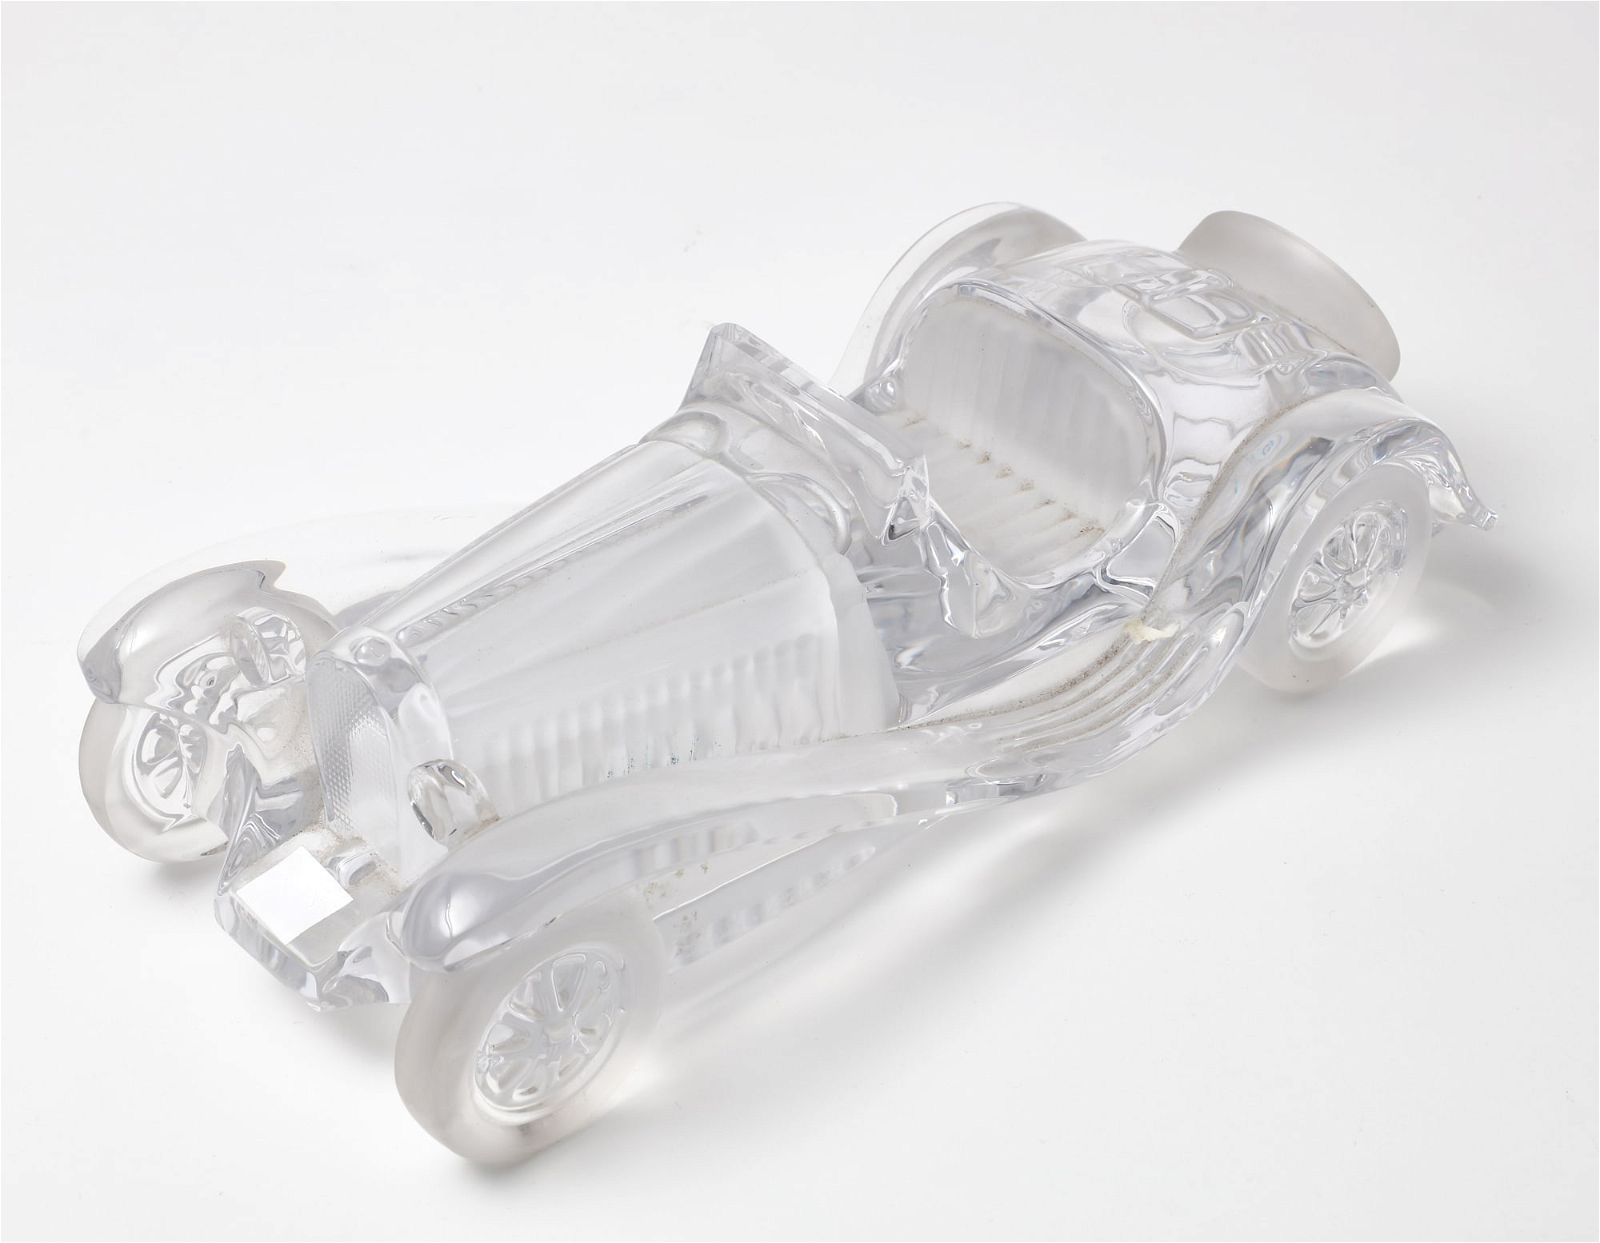 A DAUM GLASS MODEL OF A BUGATTI 2fb42d9